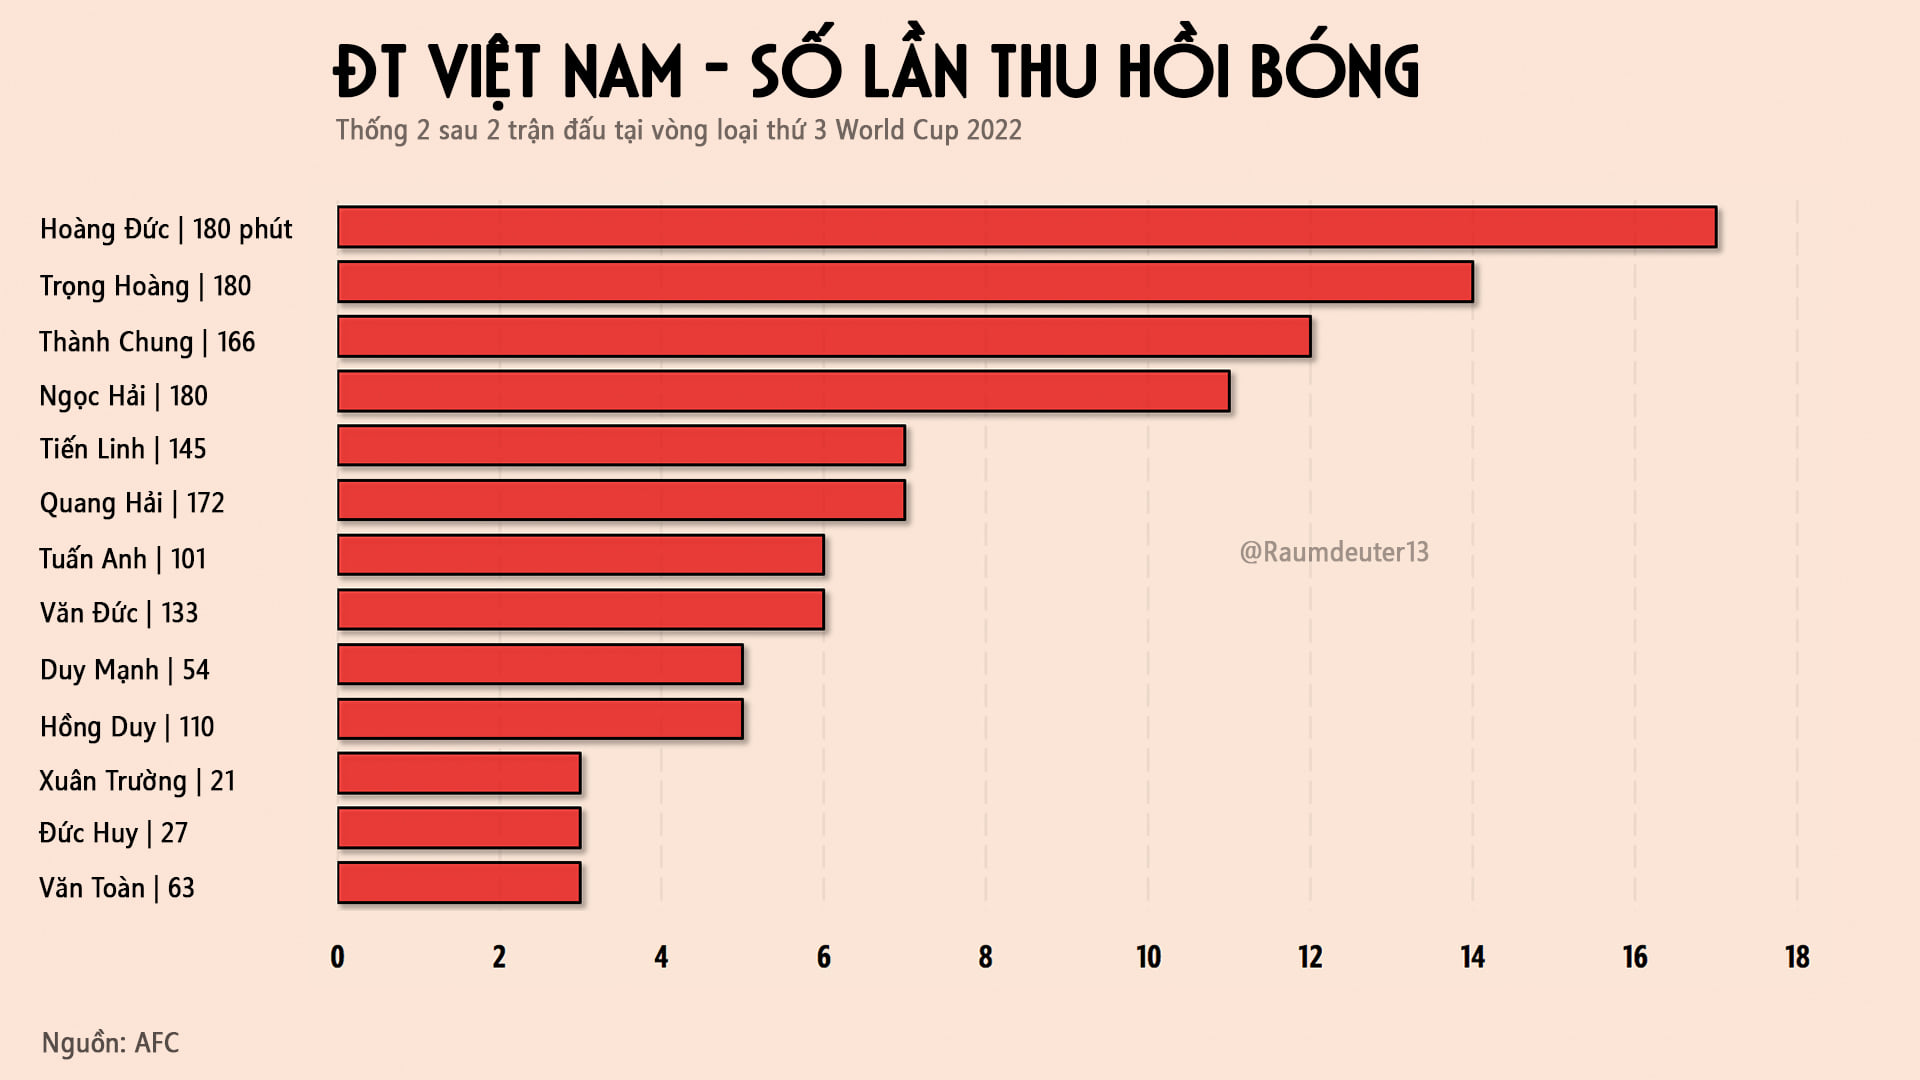 Hoàng Đức đứng đầu về số lần thu hồi bóng sau 2 trận vừa qua của ĐT Việt Nam - Nguồn: Raumdeuter13